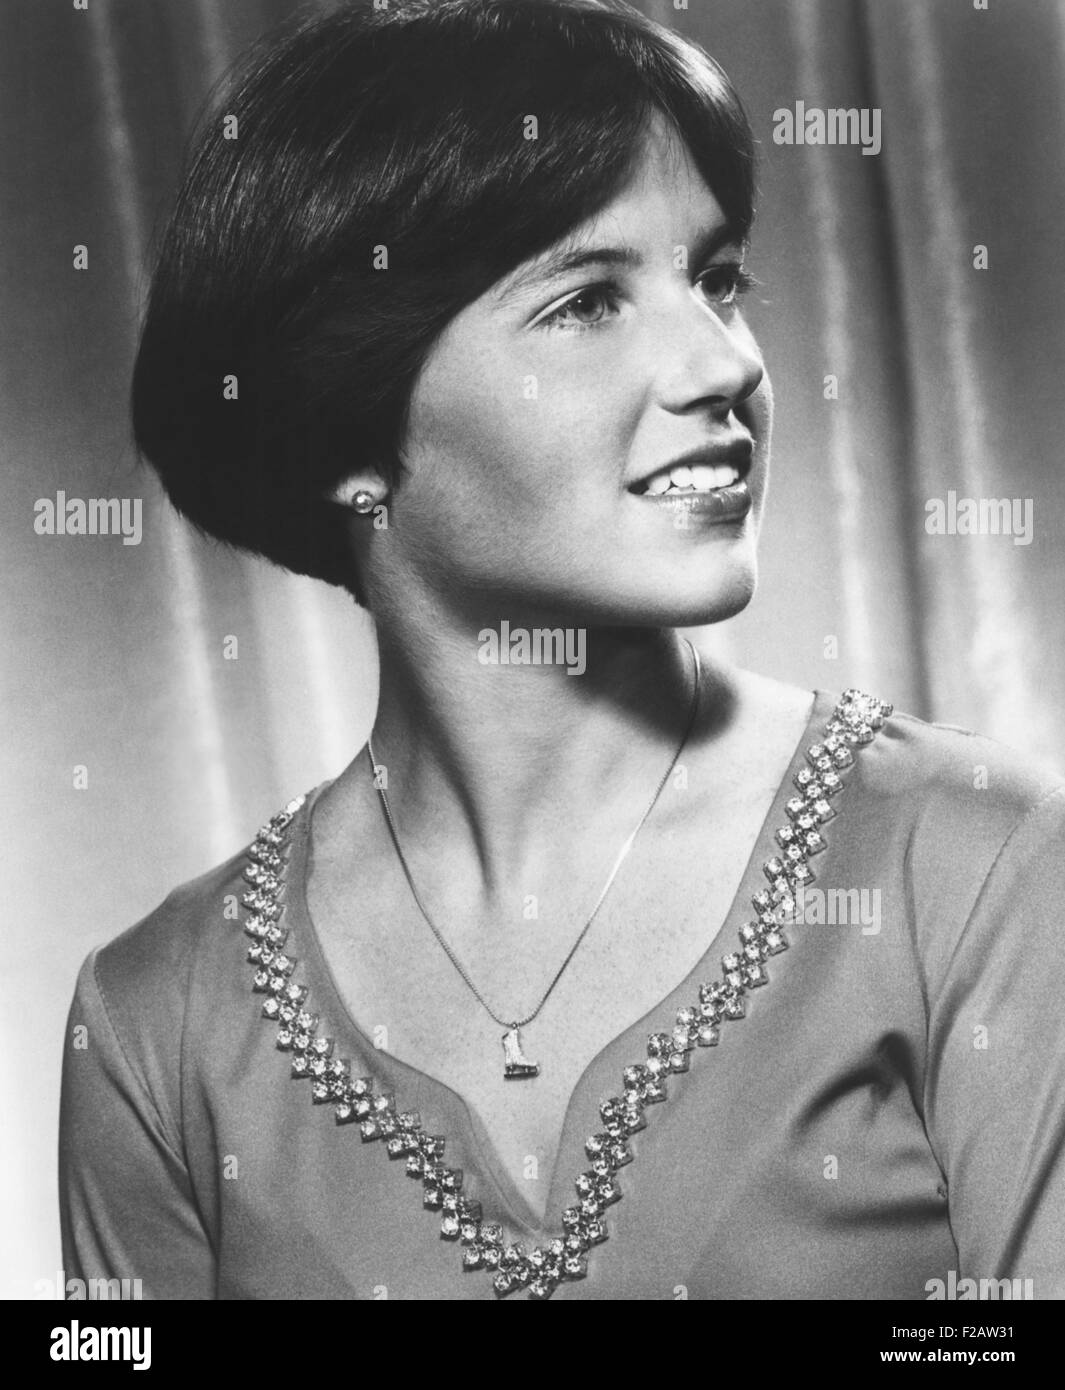 1976 Campione olimpionico di Dorothy Hamill pattinato come la stella di ghiaccio CAPADES dal 1977-84. (CSU 2015 11 1460). Foto Stock